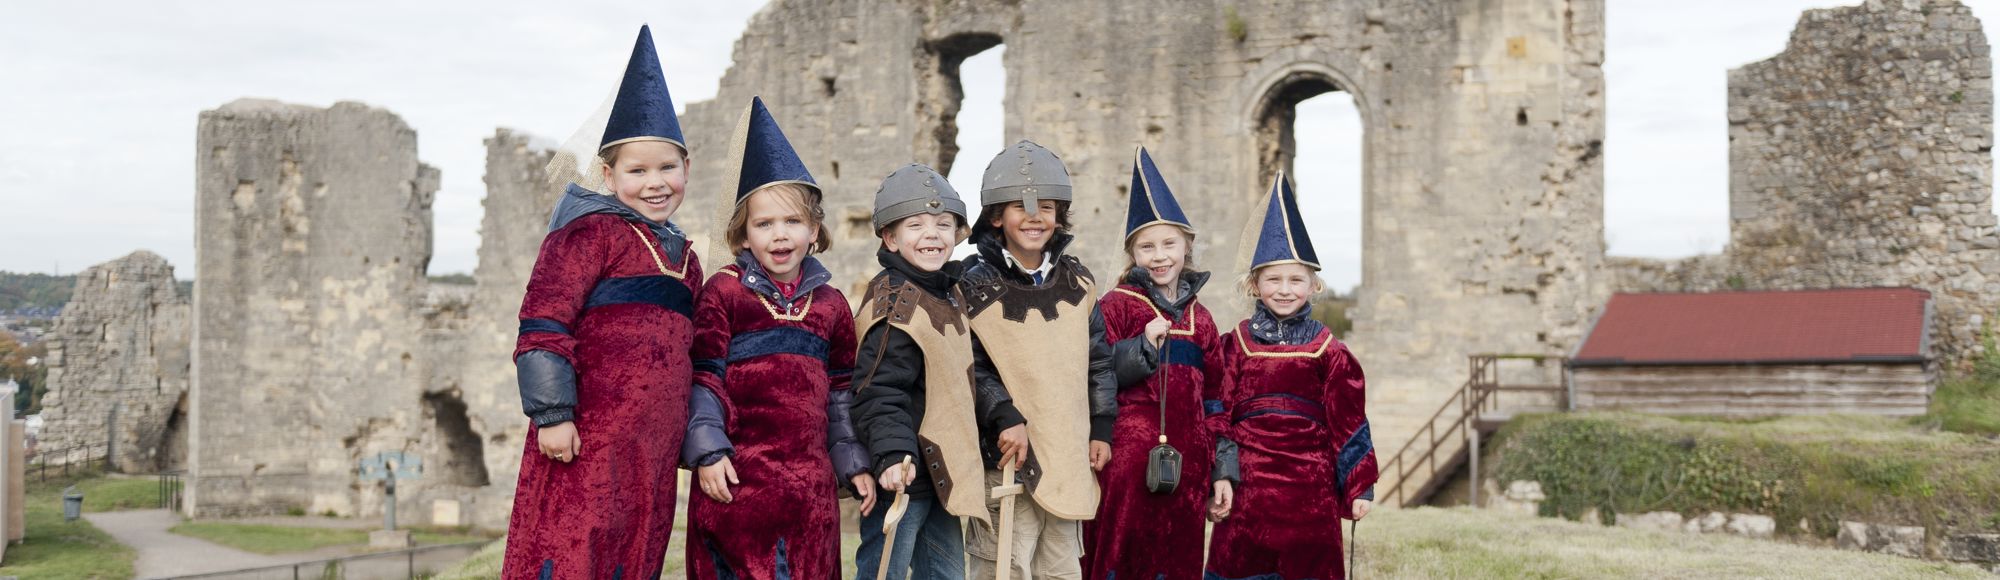 Groep kinderen staan verkleed boven op de kasteelruine in Valkenburg